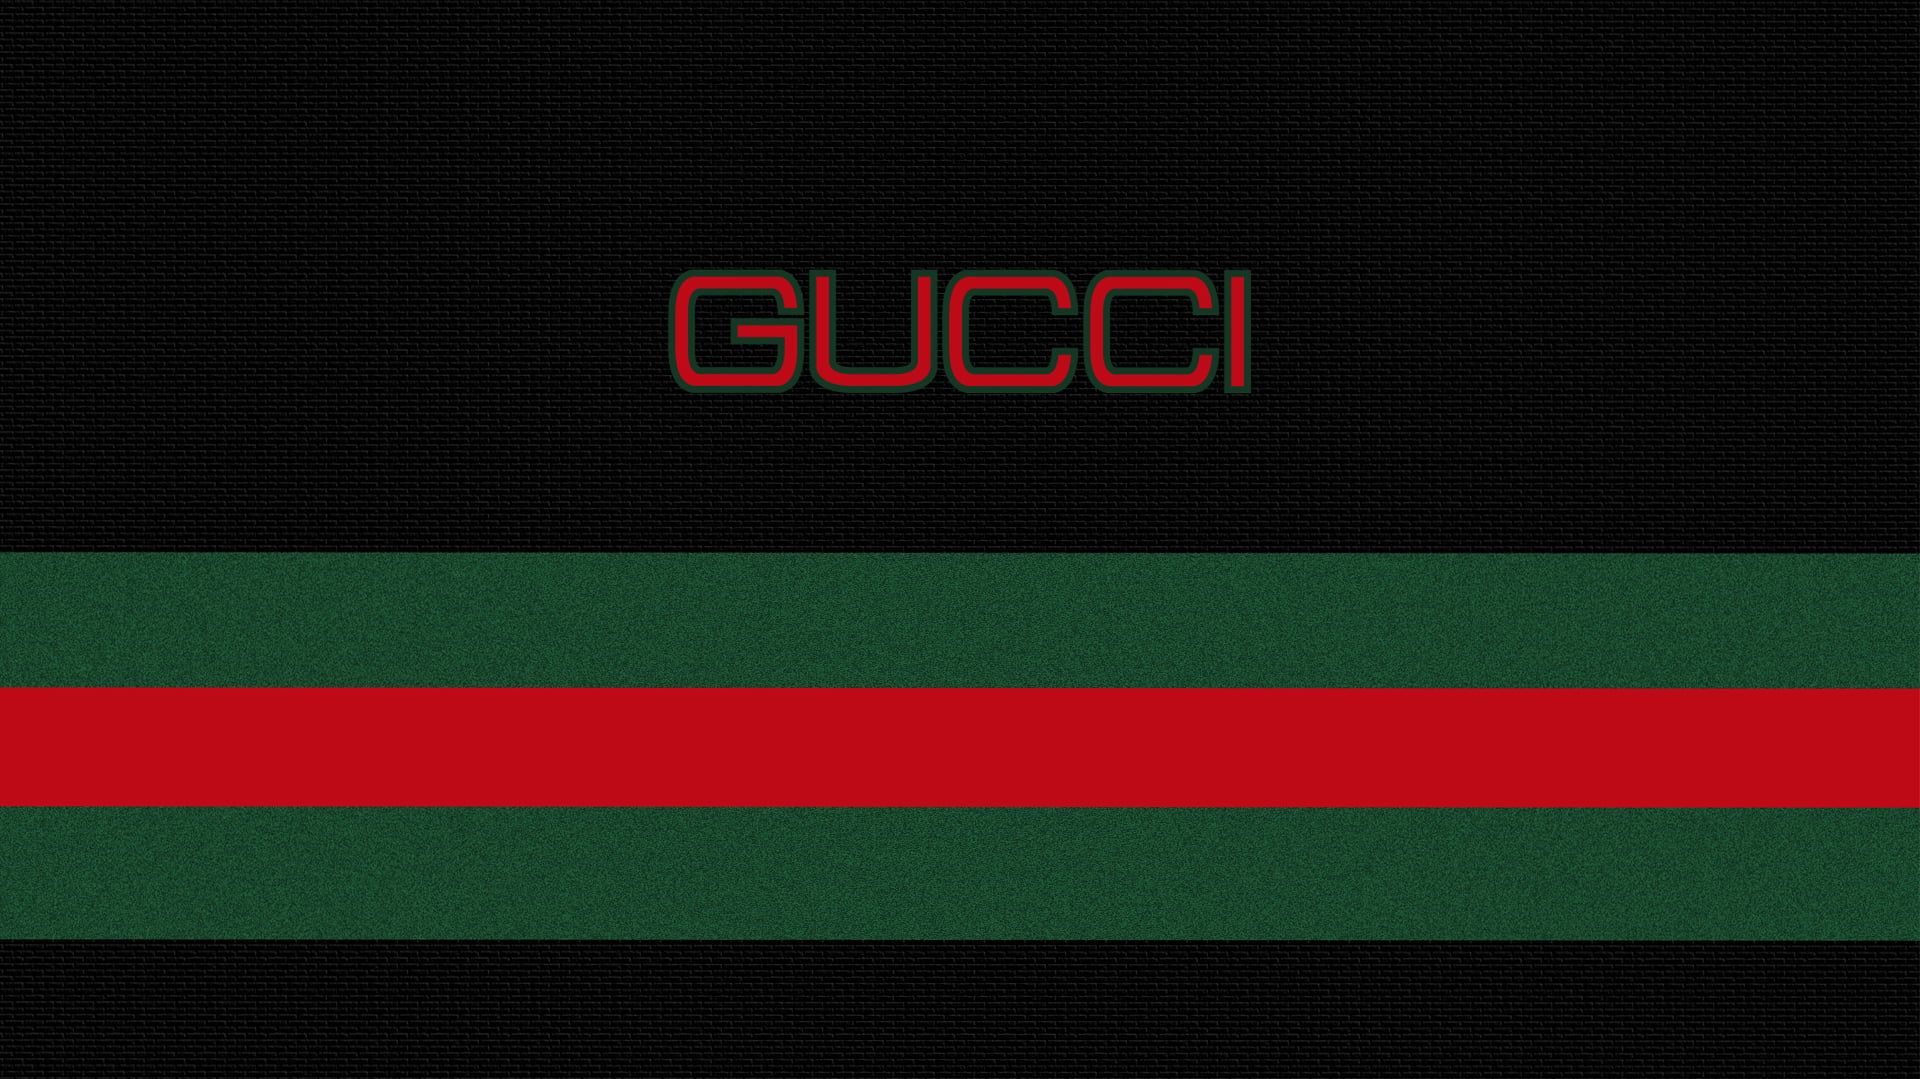 gucci stripes logo